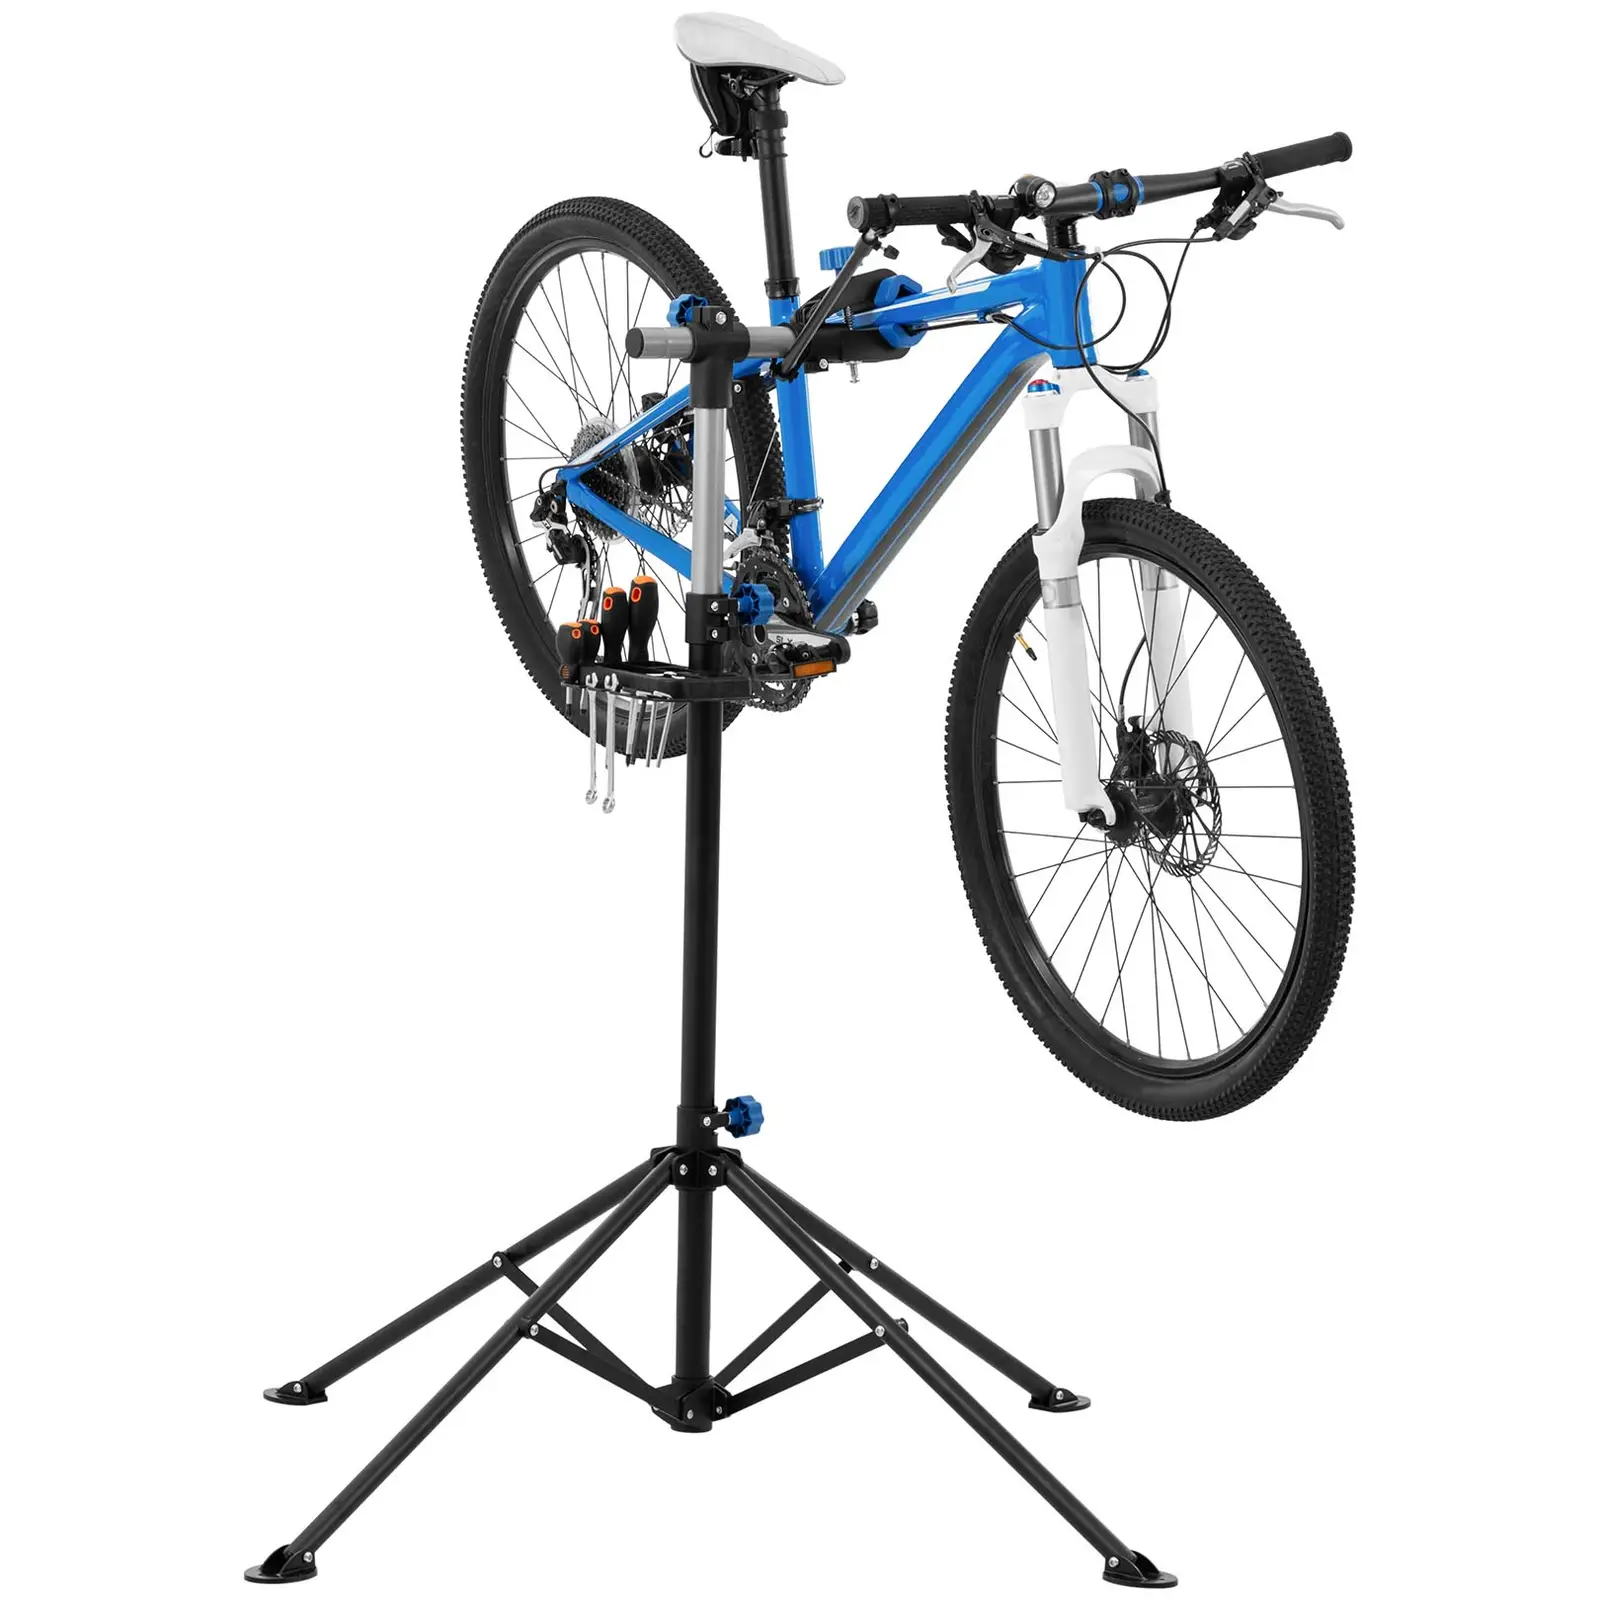 Stojak serwisowy do rowerów - 1080 - 1900 mm - składany - do 25 kg - rurka statywu: okrągła